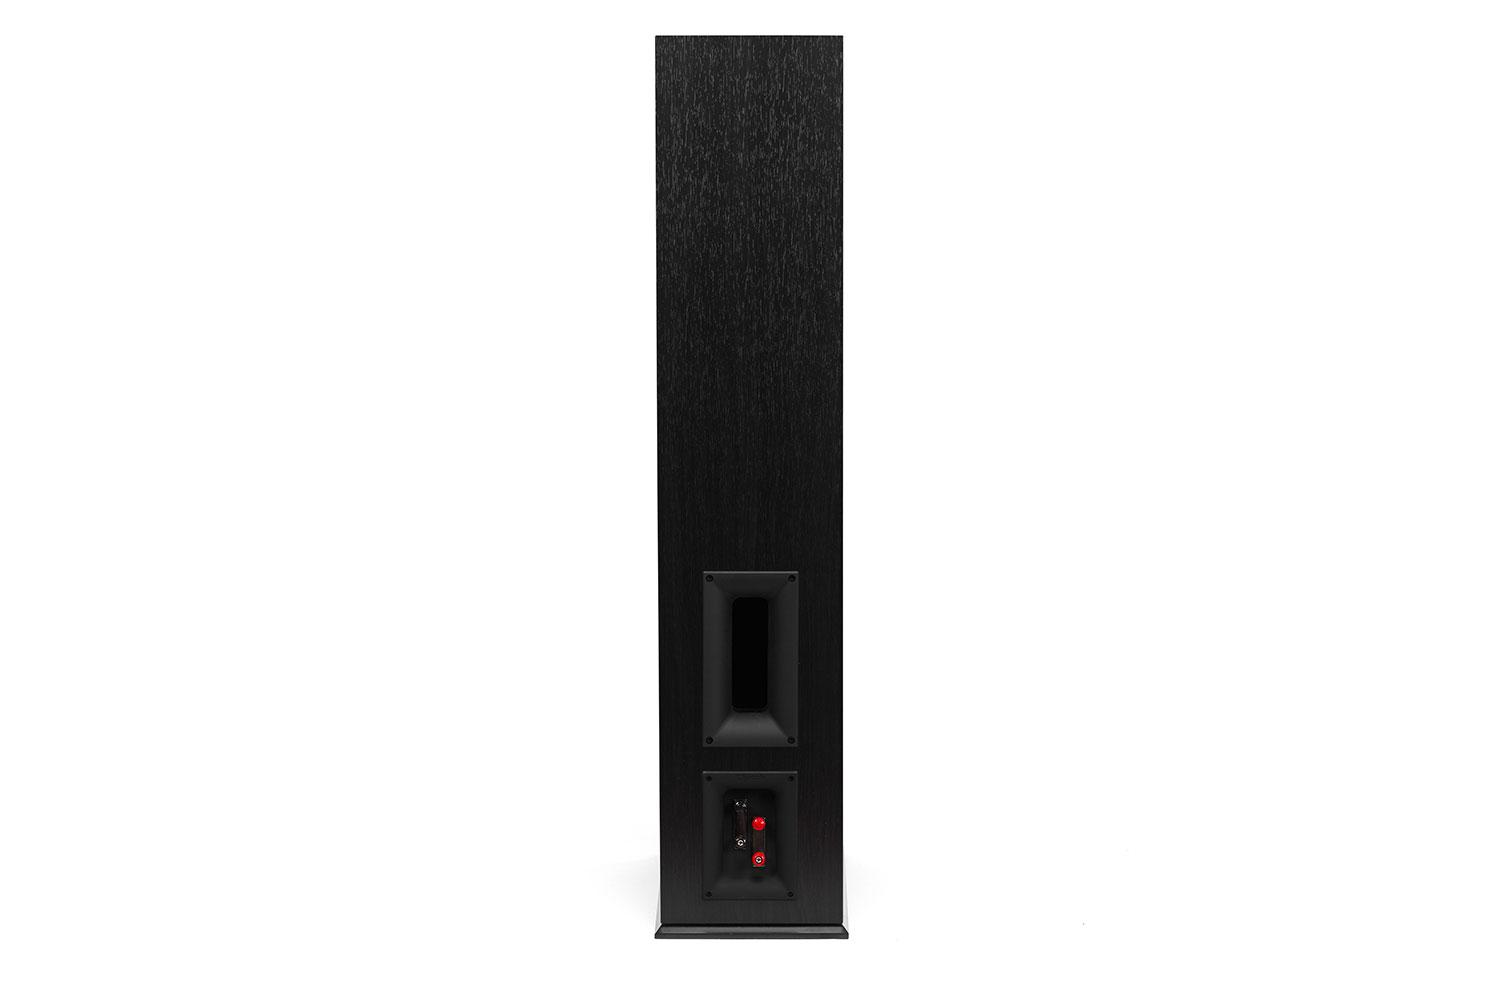 klipsch reference premier speaker system debuts at ces 2015 260f back